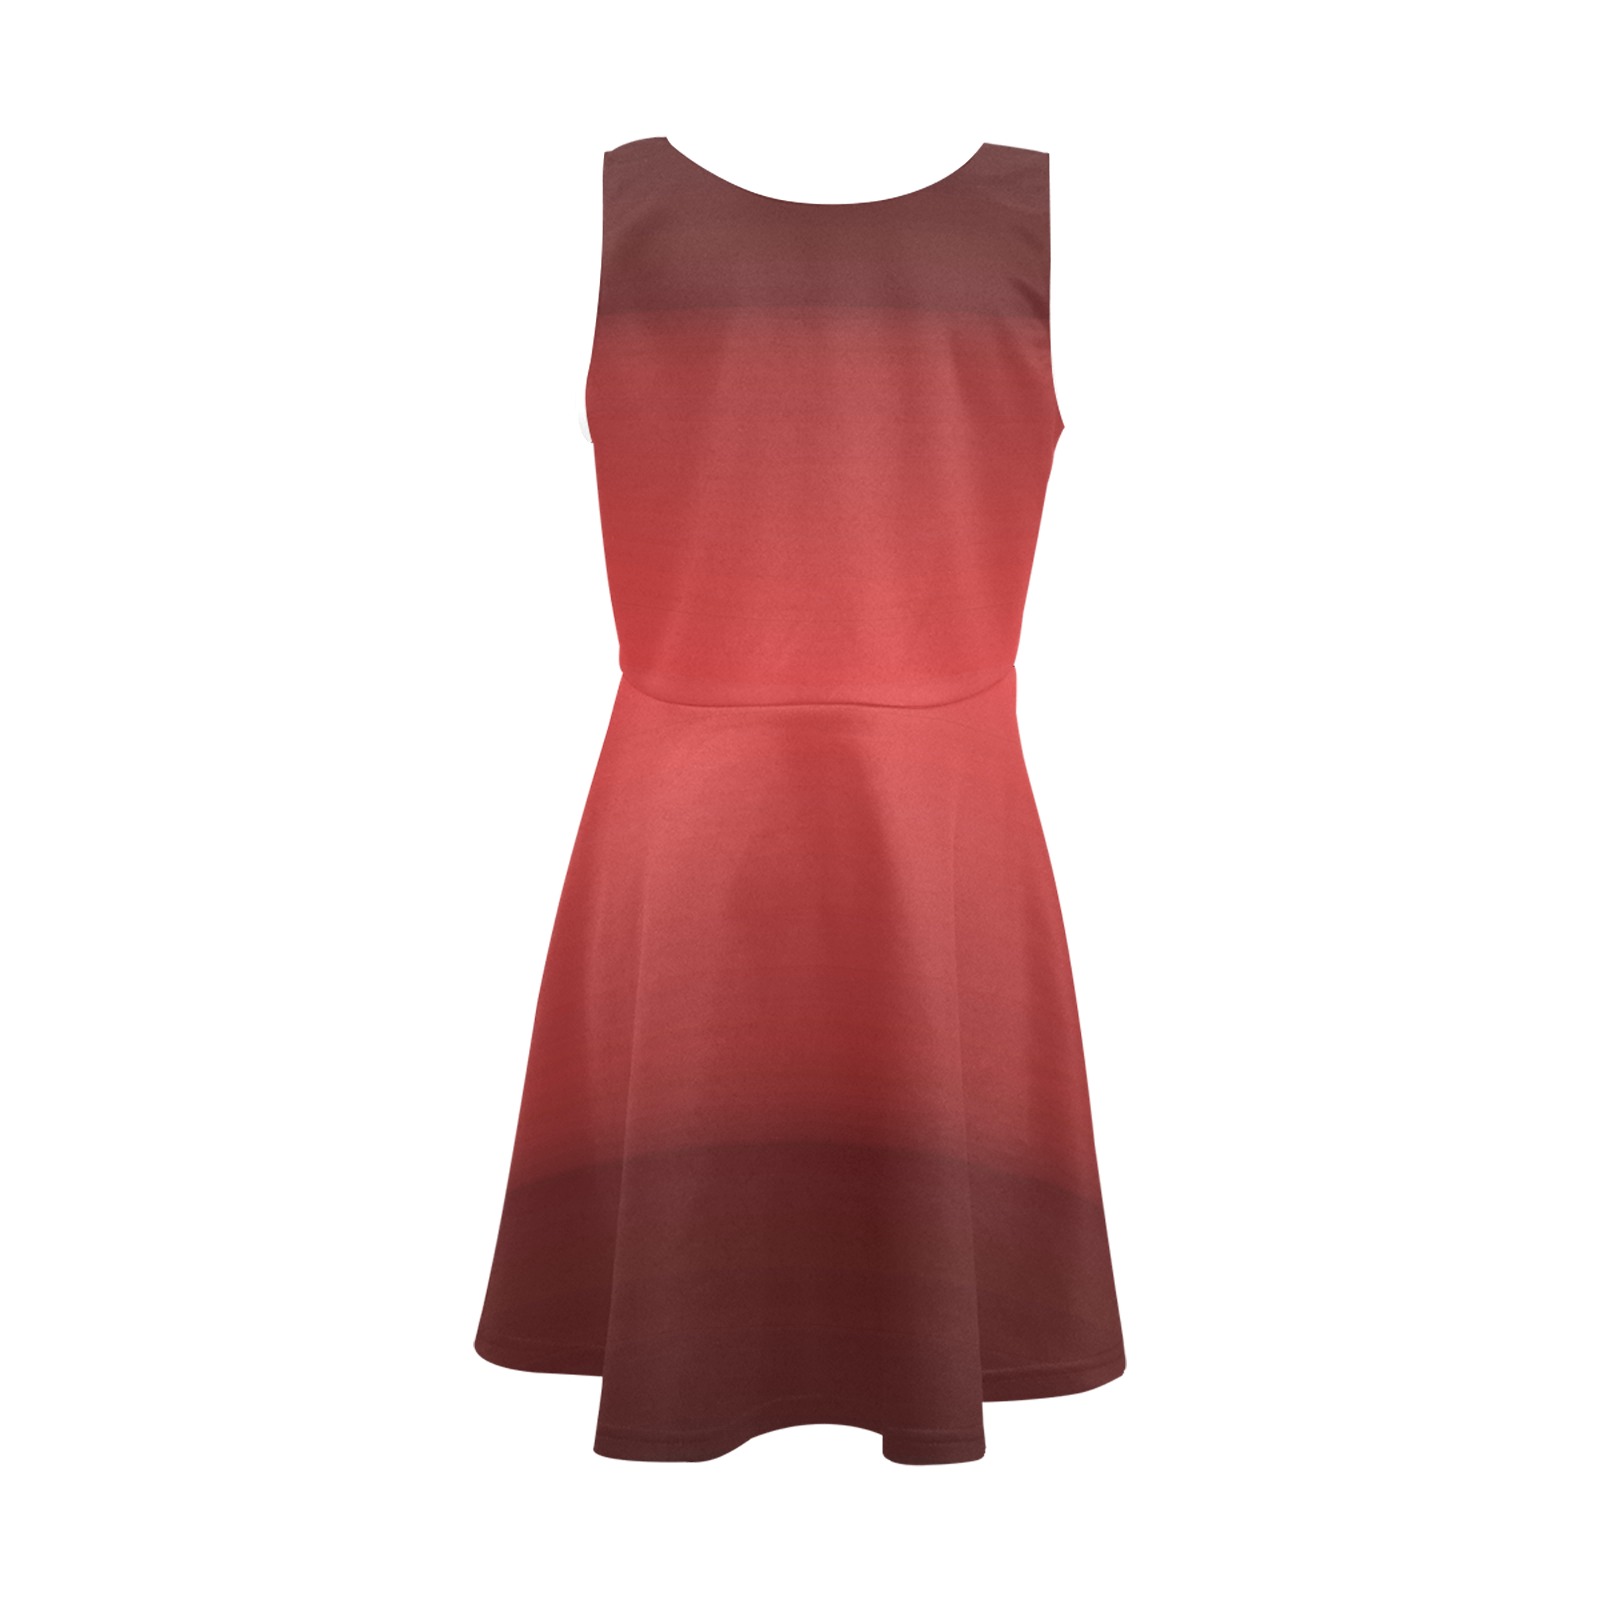 orn red Girls' Sleeveless Sundress (Model D56)